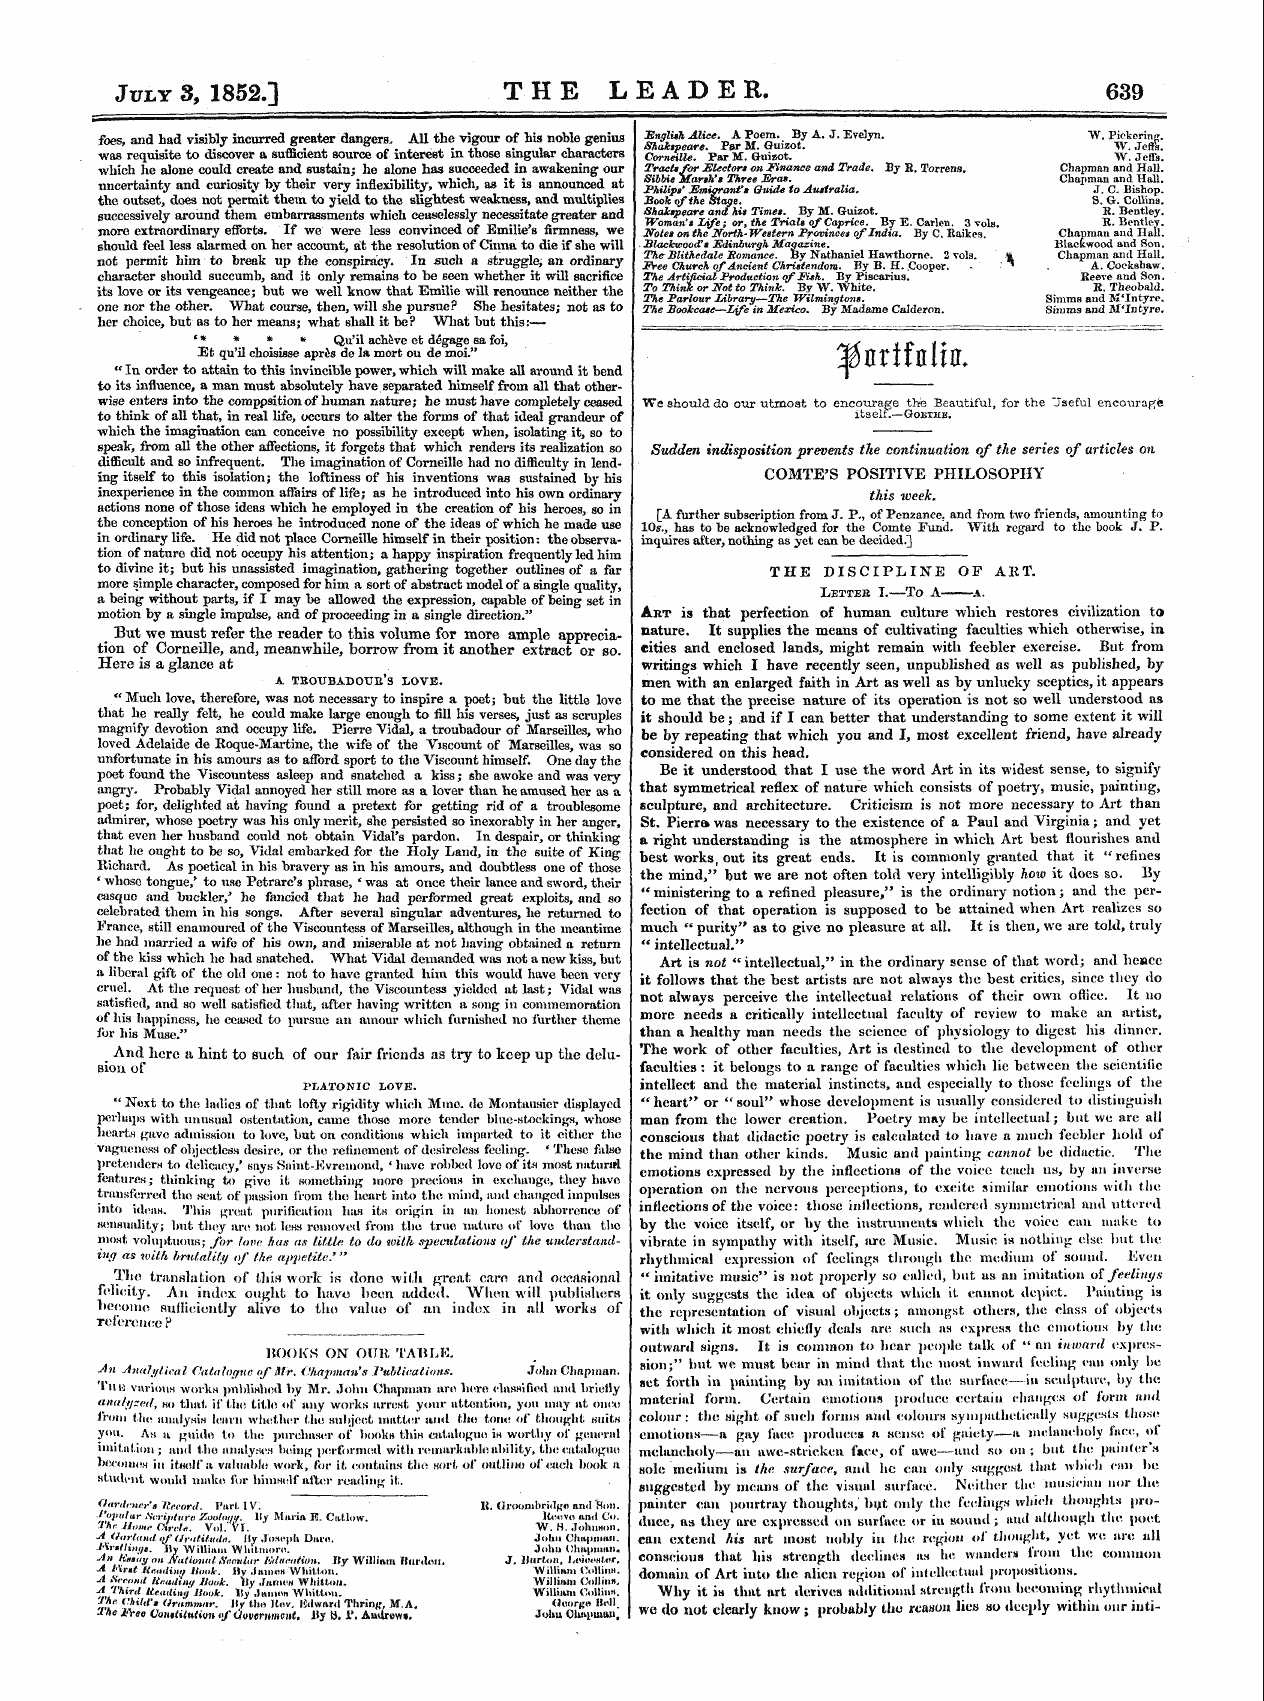 Leader (1850-1860): jS F Y, Country edition - Apnrifiilifl